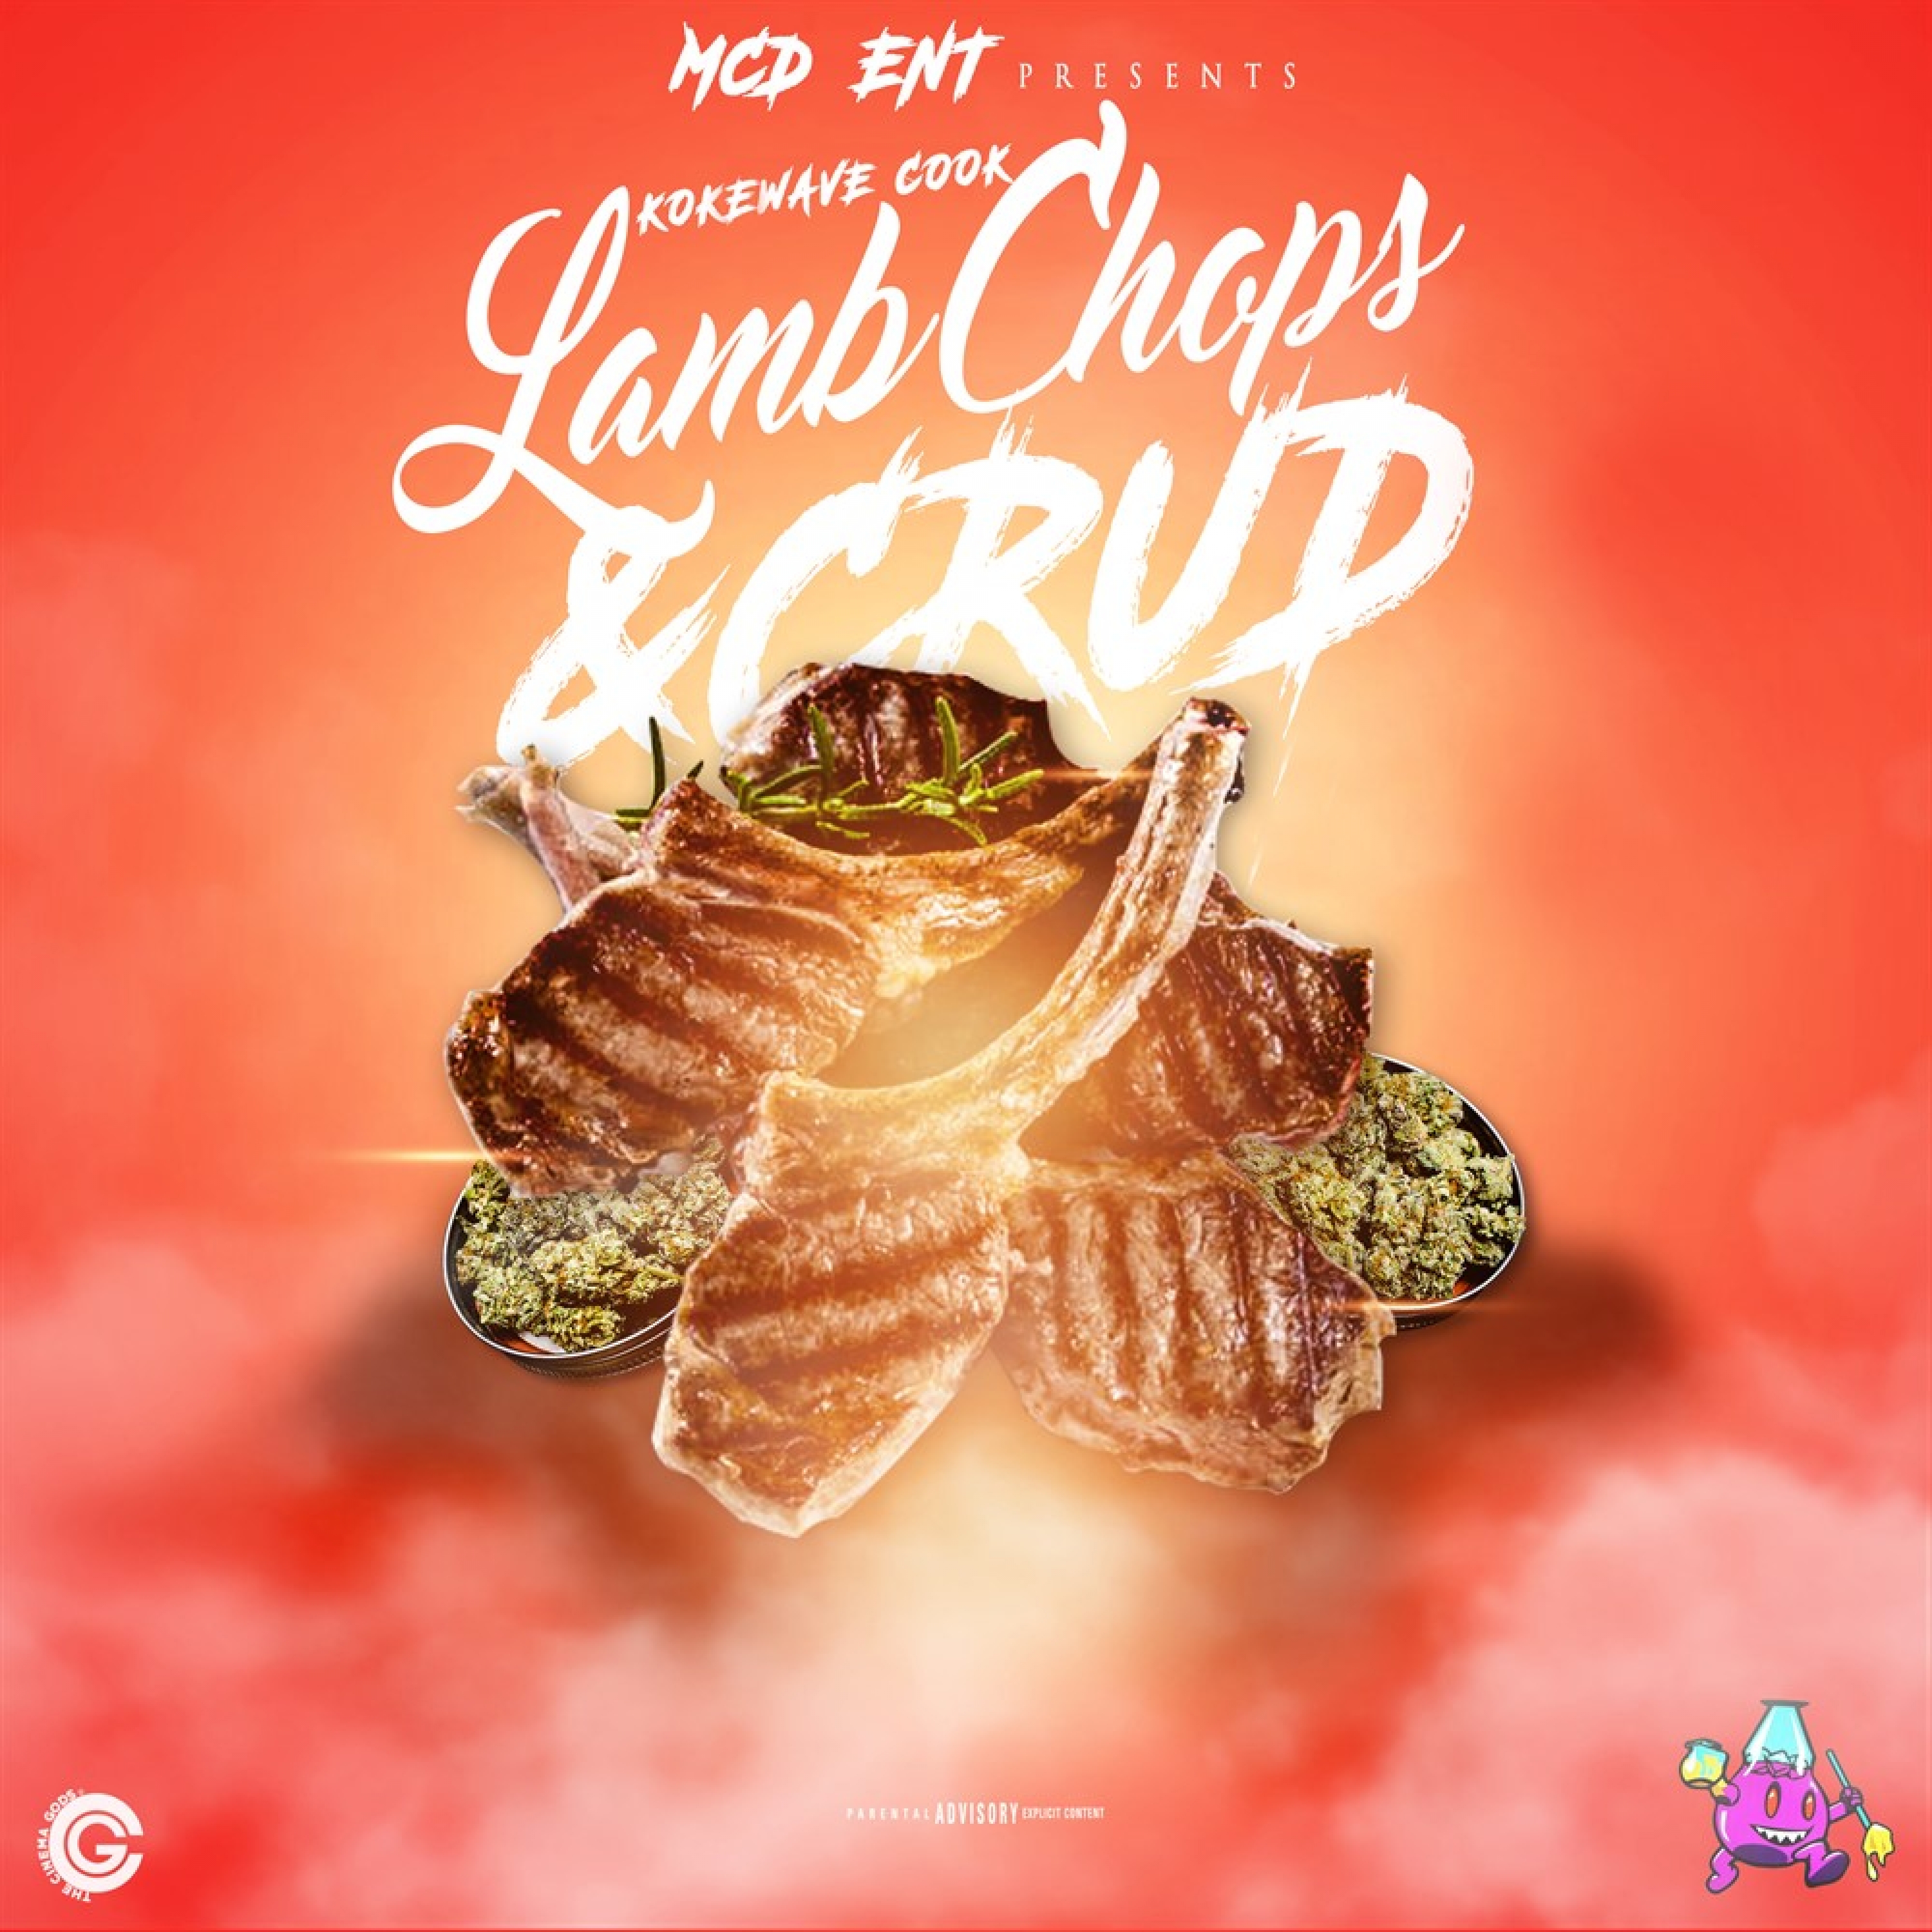 Lamb Chops & Crud